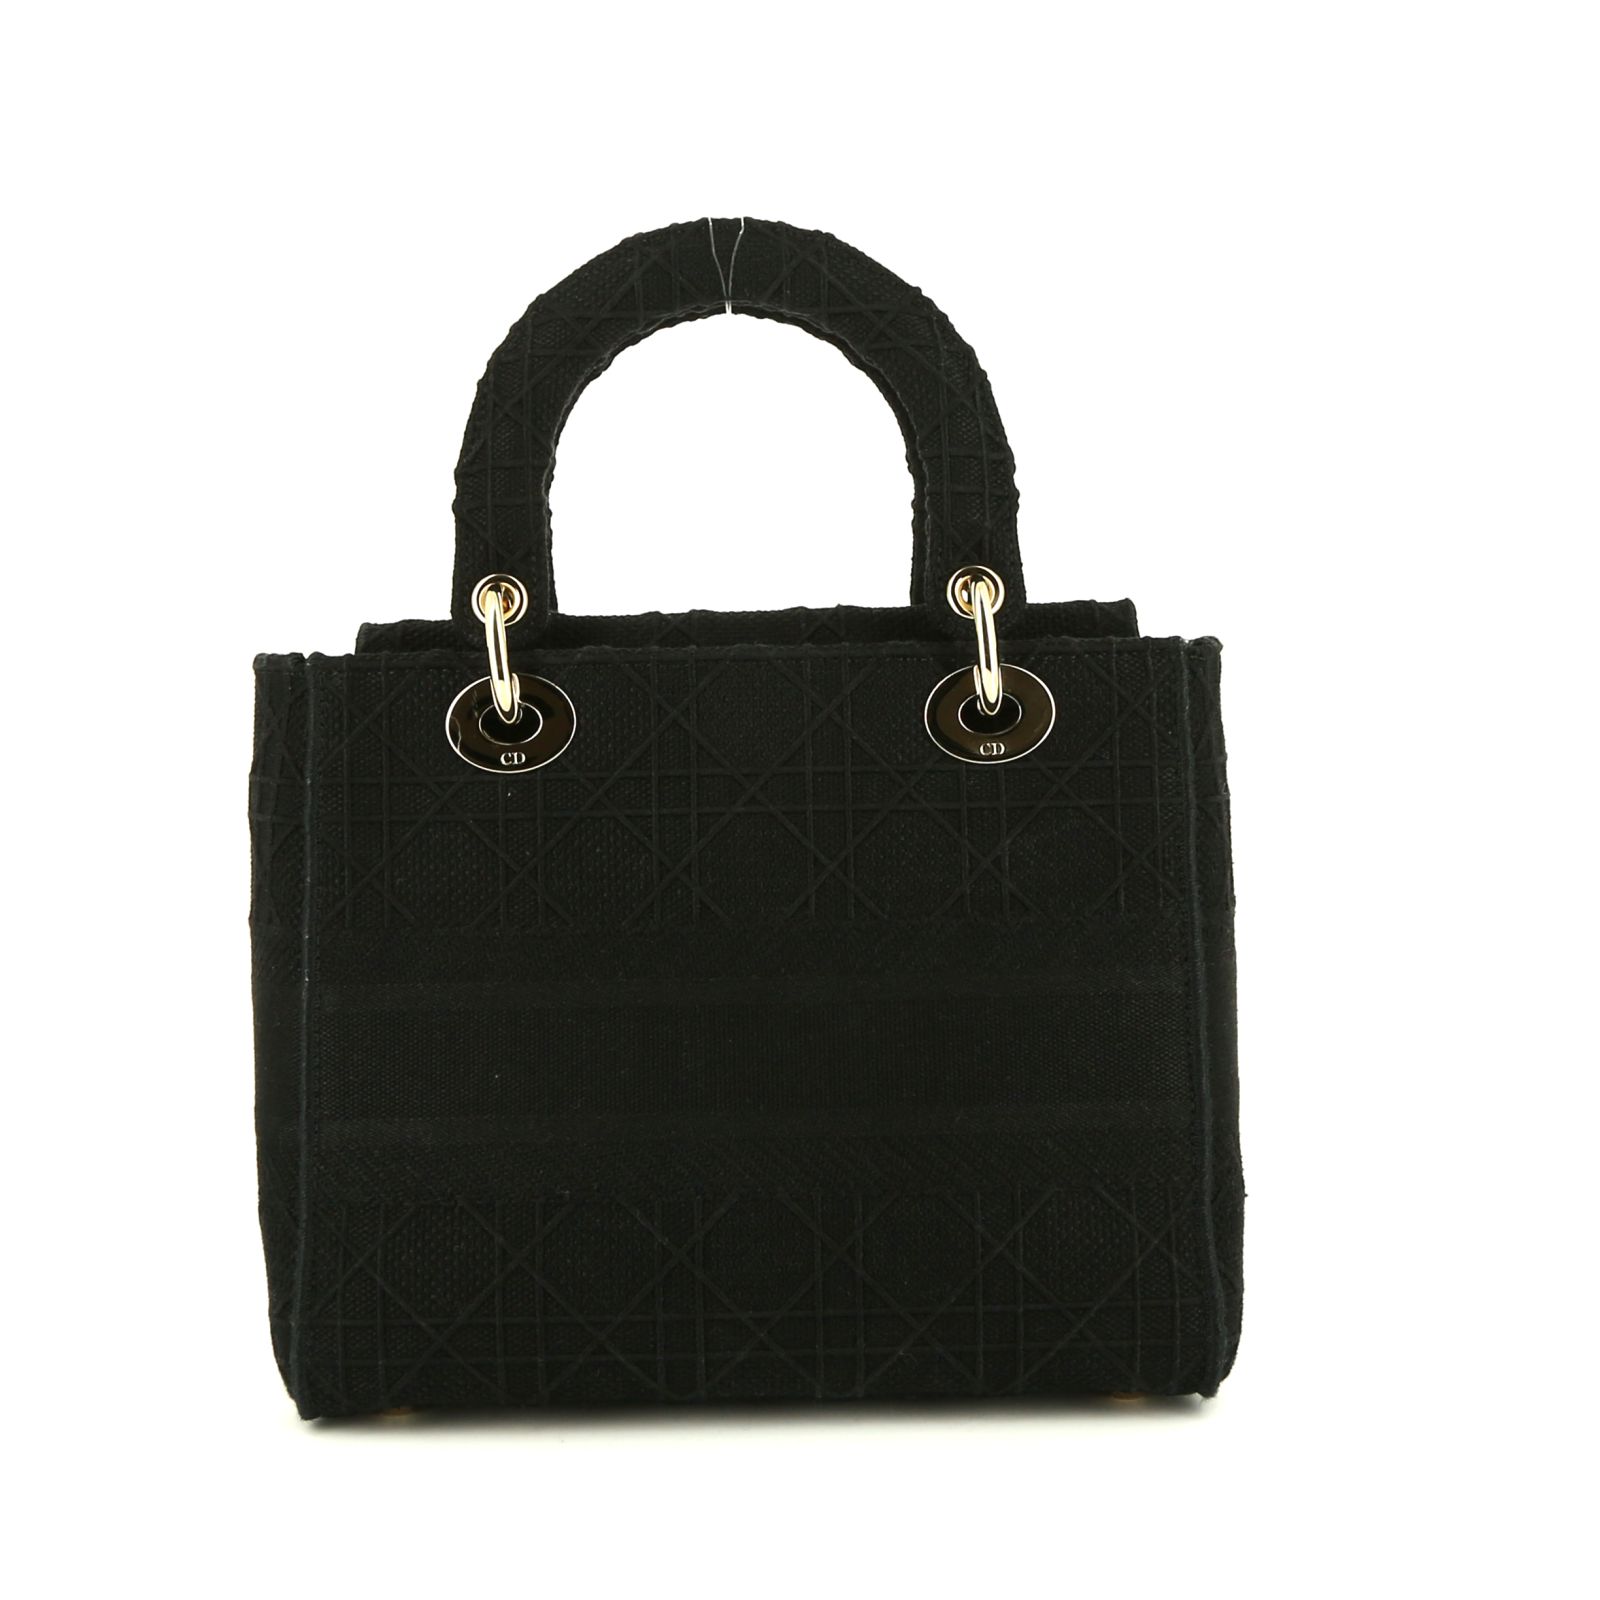 Lady D-Light Handbag In Black Canvas